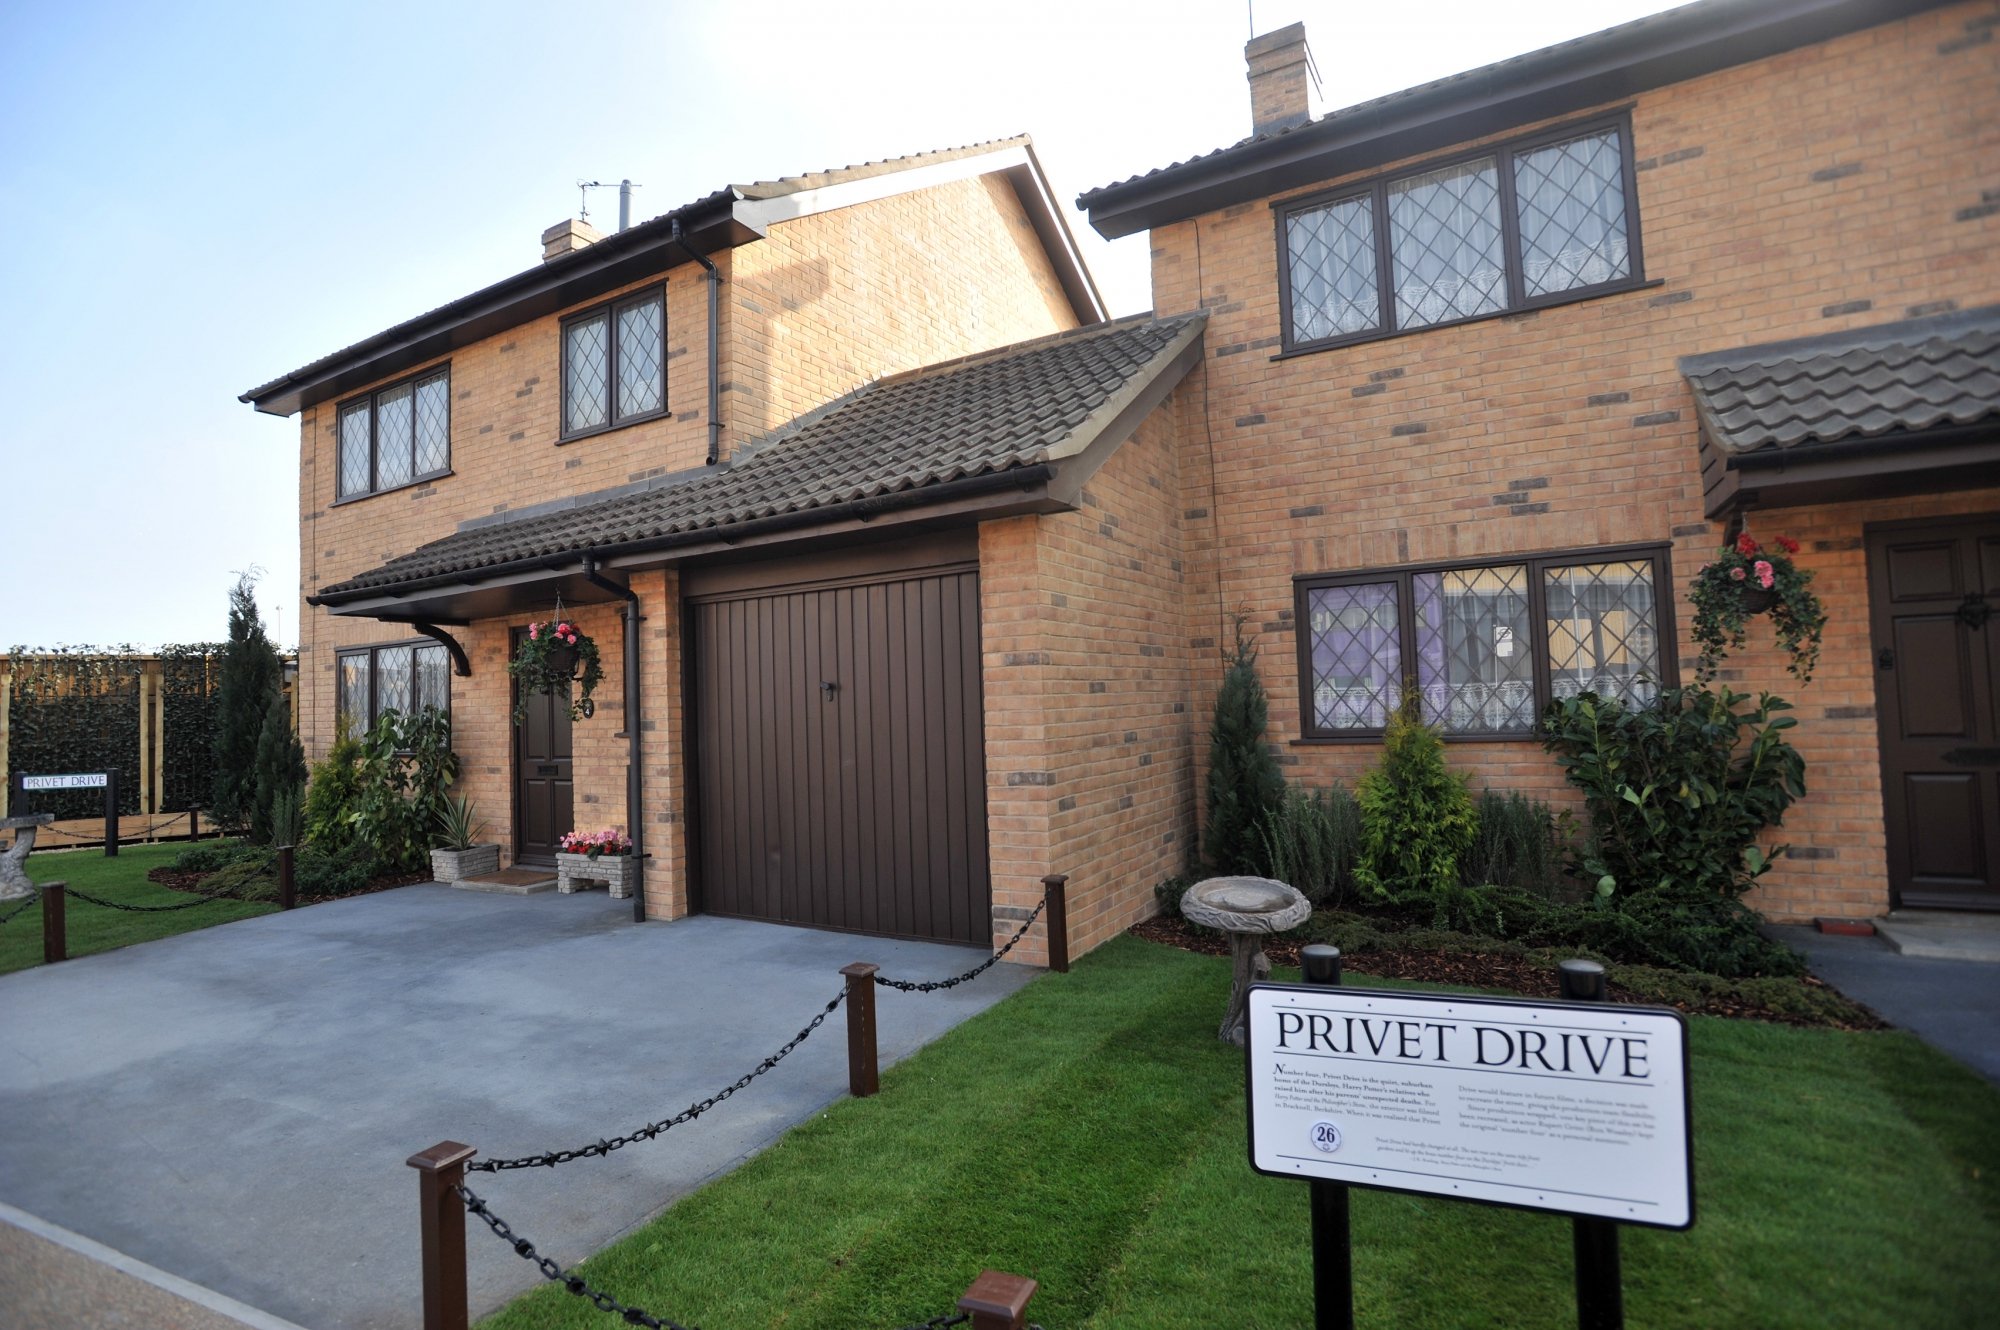 4, Privet Drive, Little Whinging, Surrey, la maison de Harry Potter et des Dursley aux studios Leavesden en Angleterre.